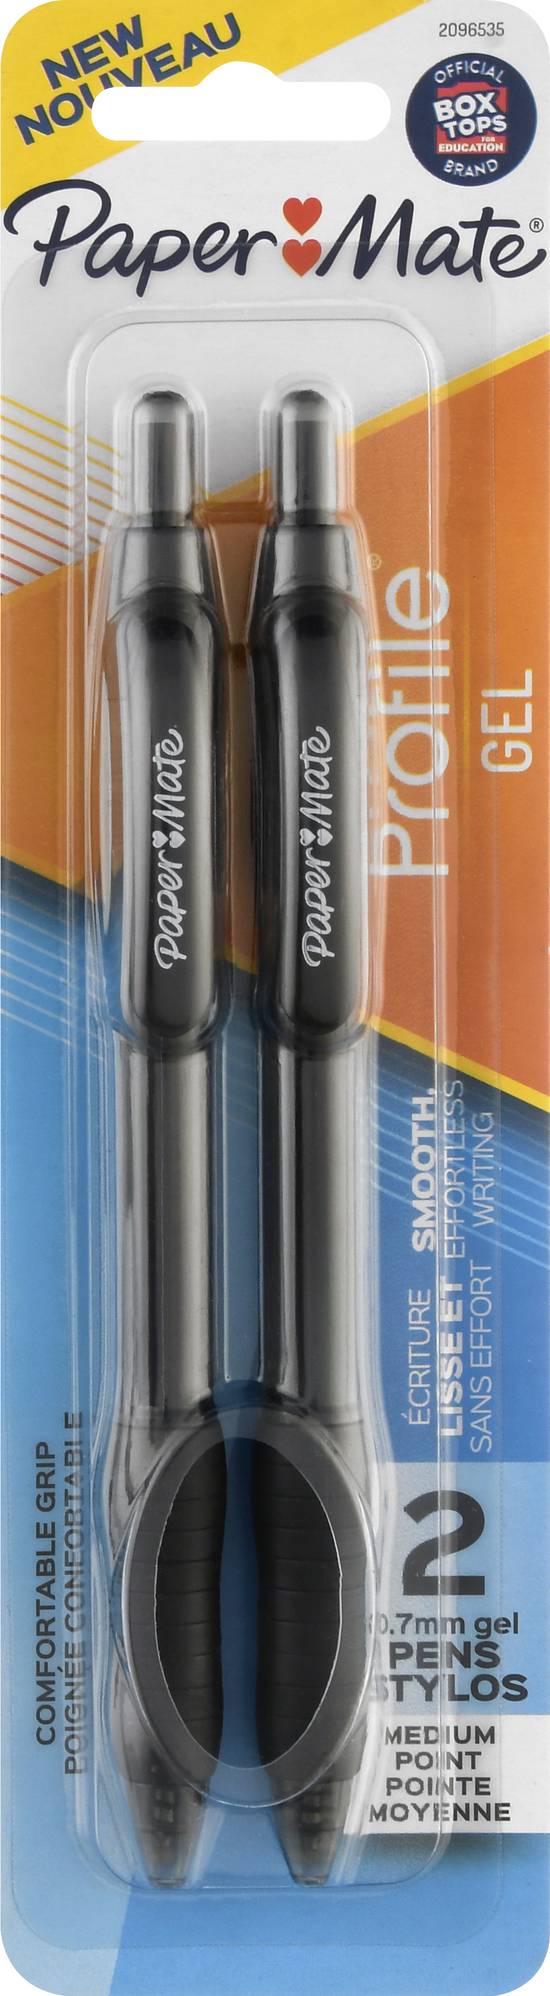 Paper Mate Gel Medium Point Pens (2 ct)